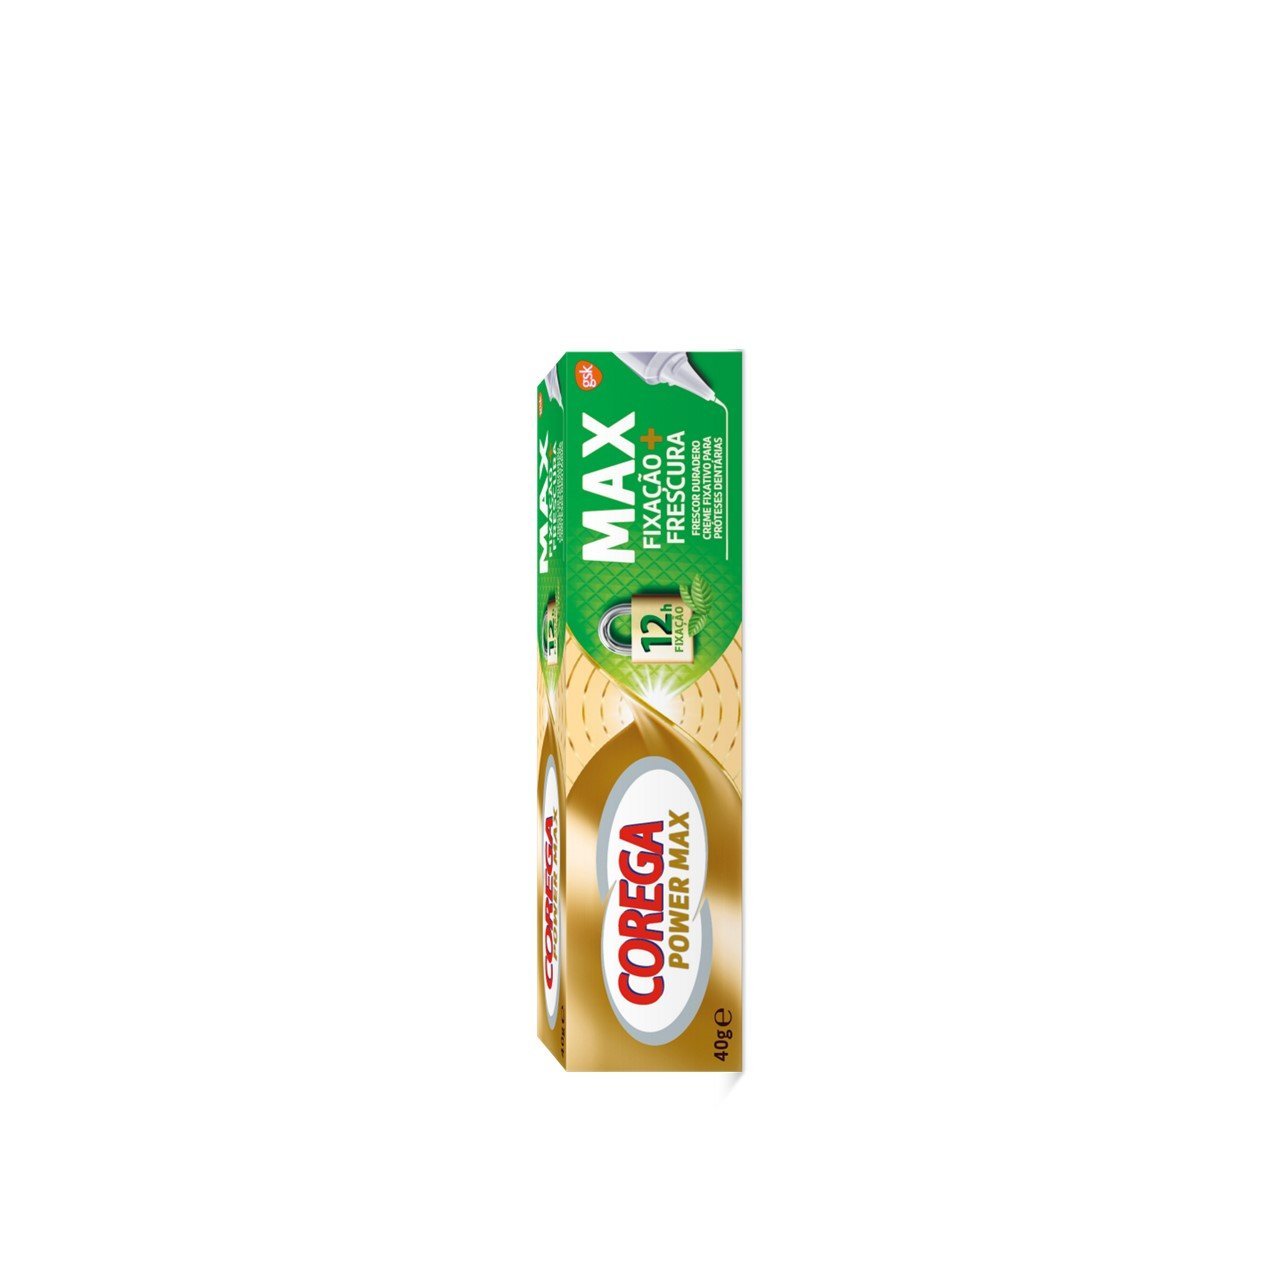 Corega Power Max Fixation + Freshness Denture Cream 40g (1.41 oz)